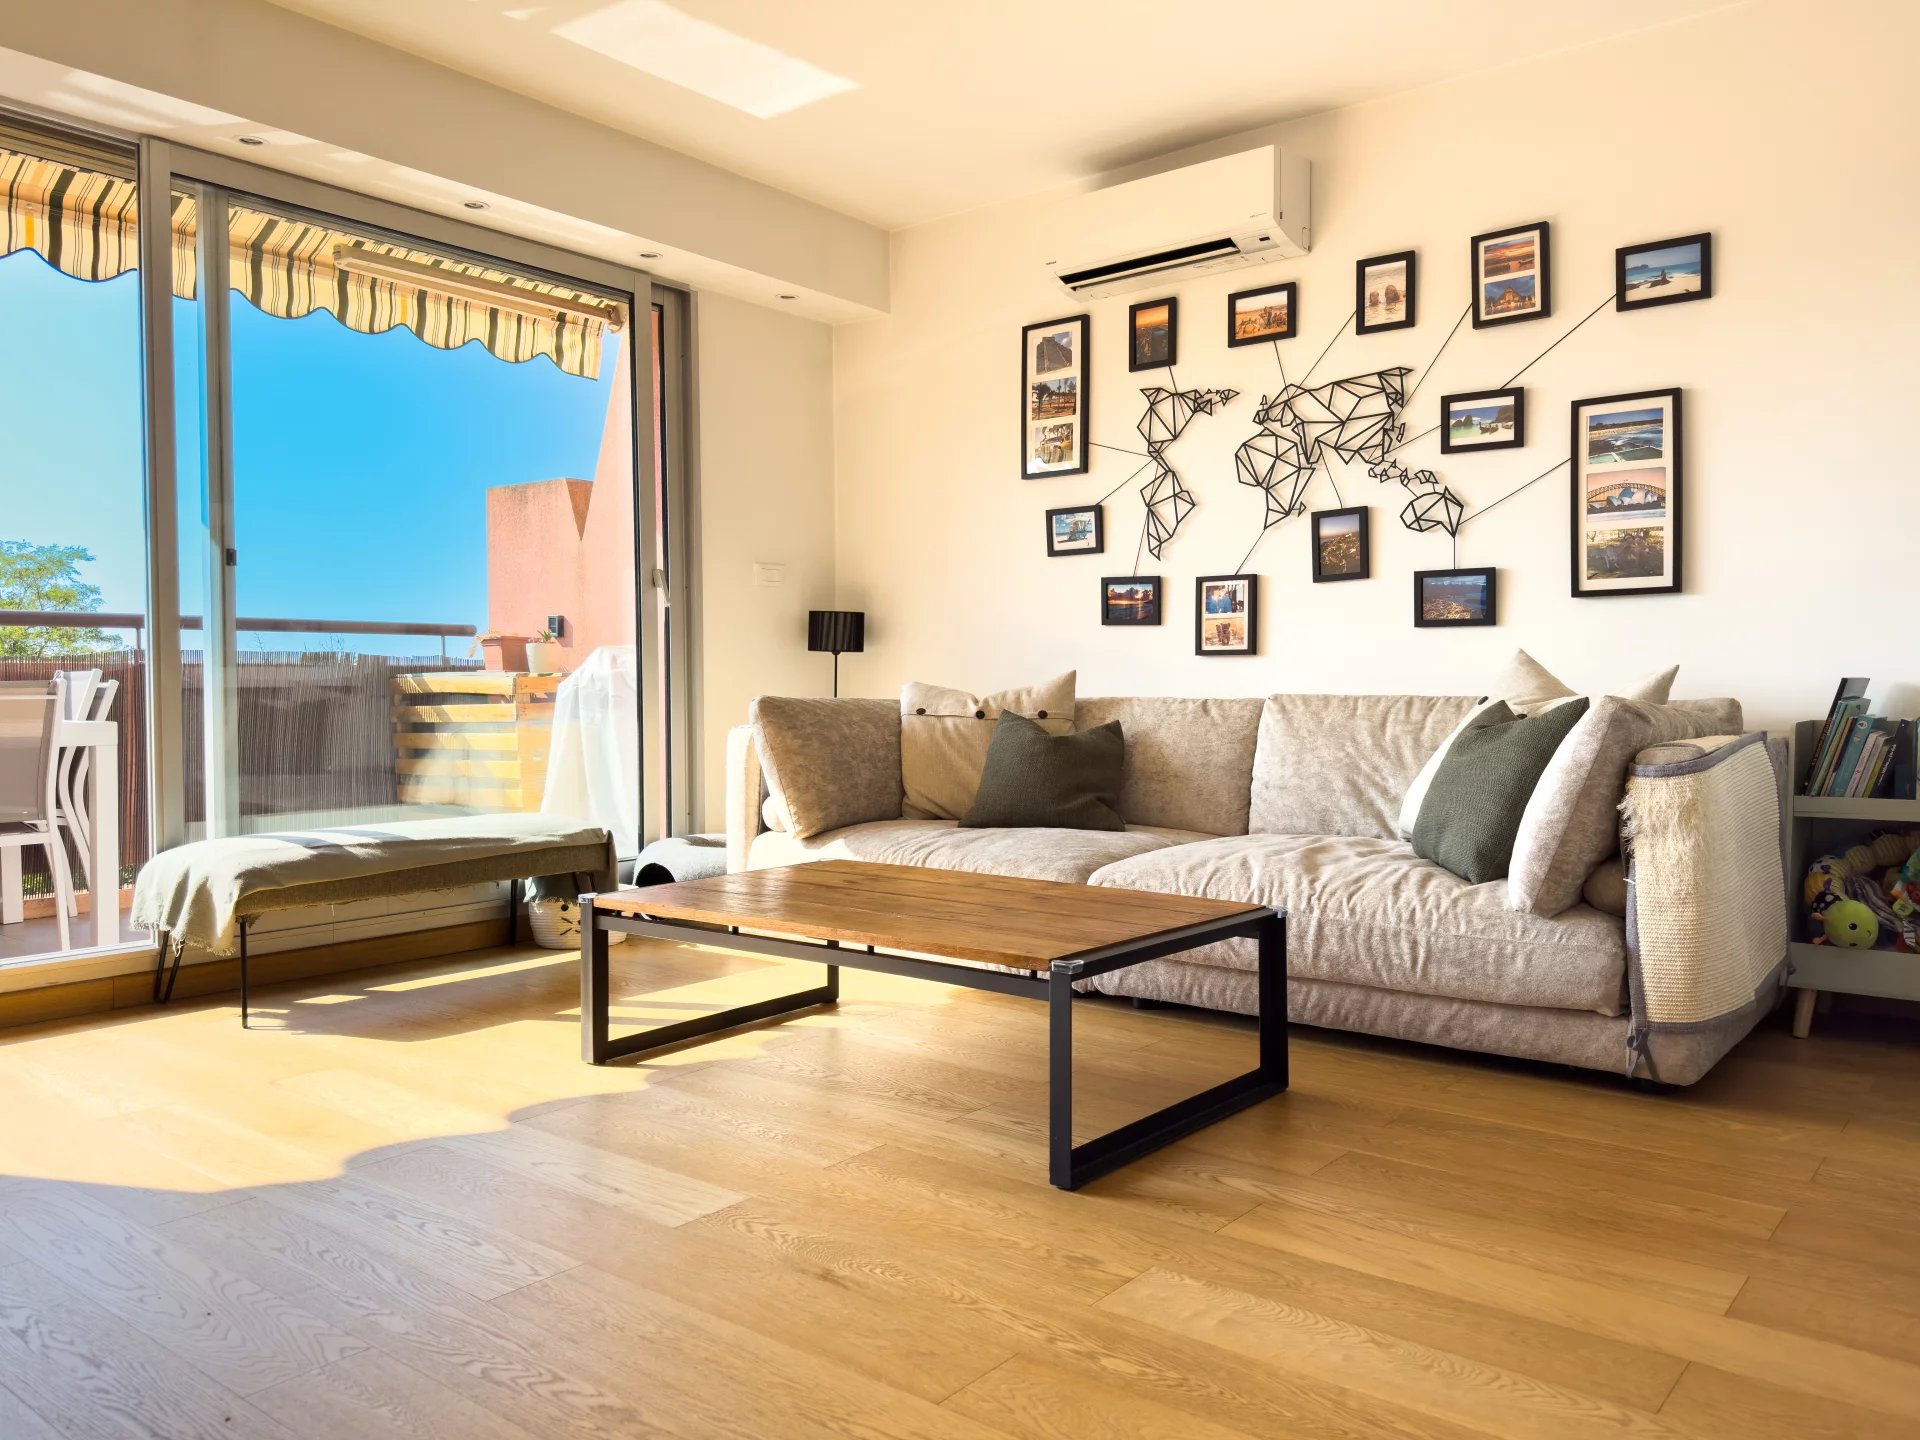 Appartement 2 pièces lumineux avec vue panoramique à La Turbie : idéal pour vivre ou investir près de Monaco.